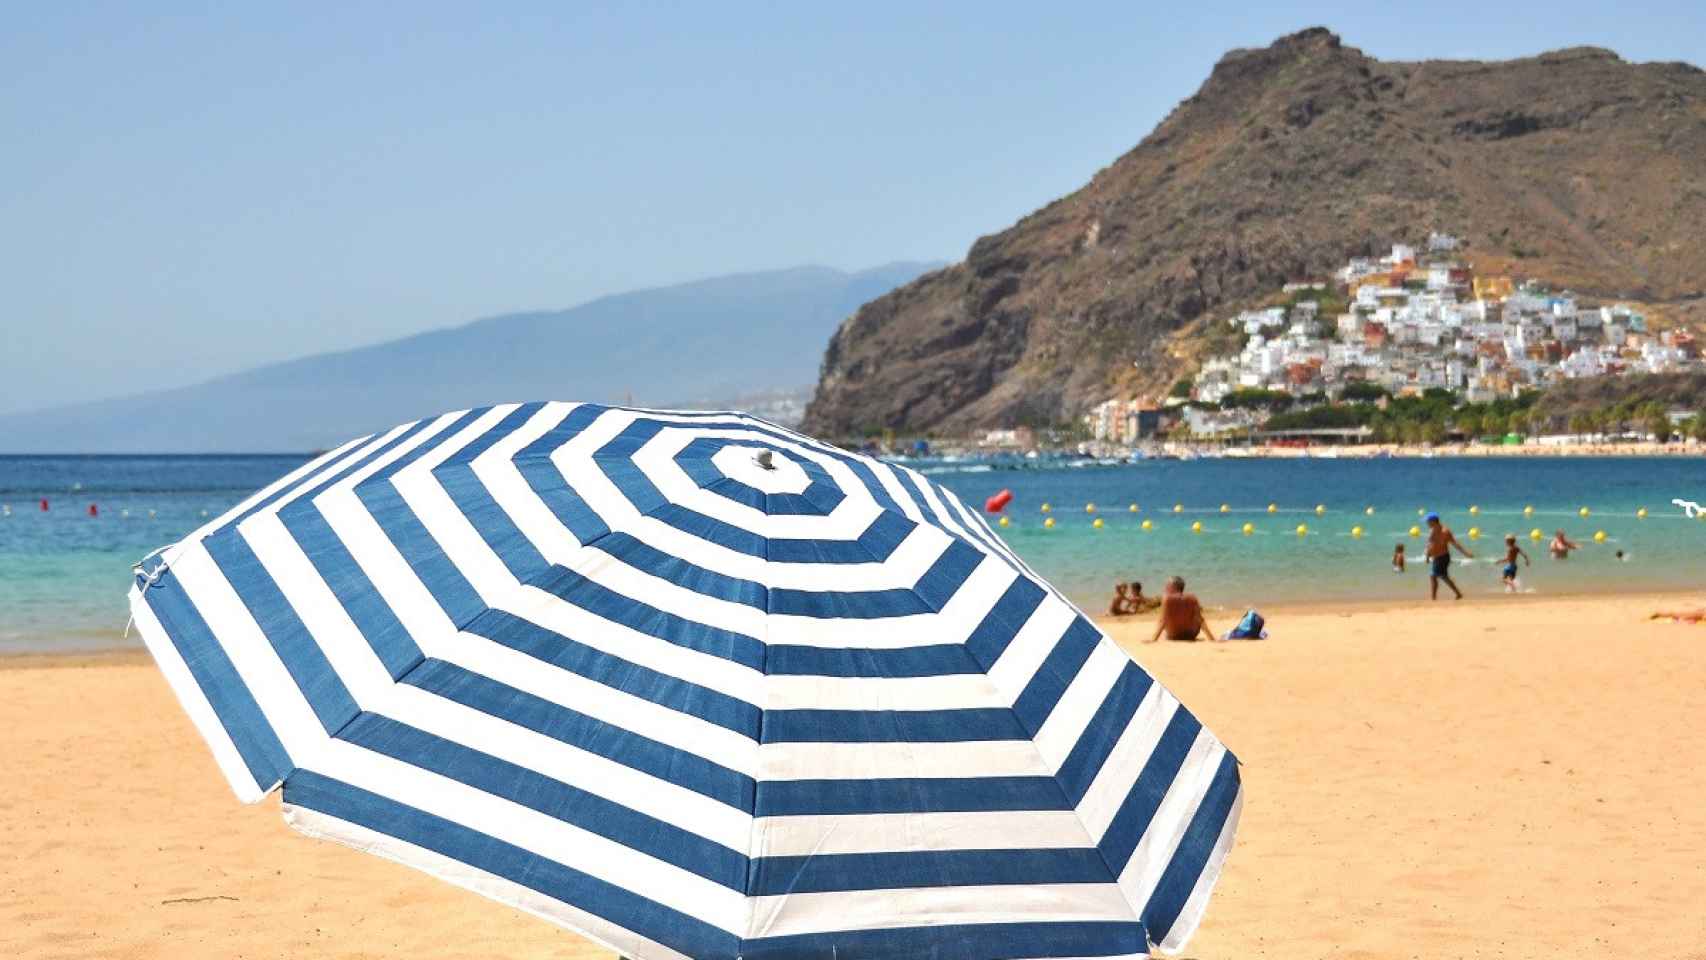 Sombrilla playa parasol aluminio y poliéster naranja